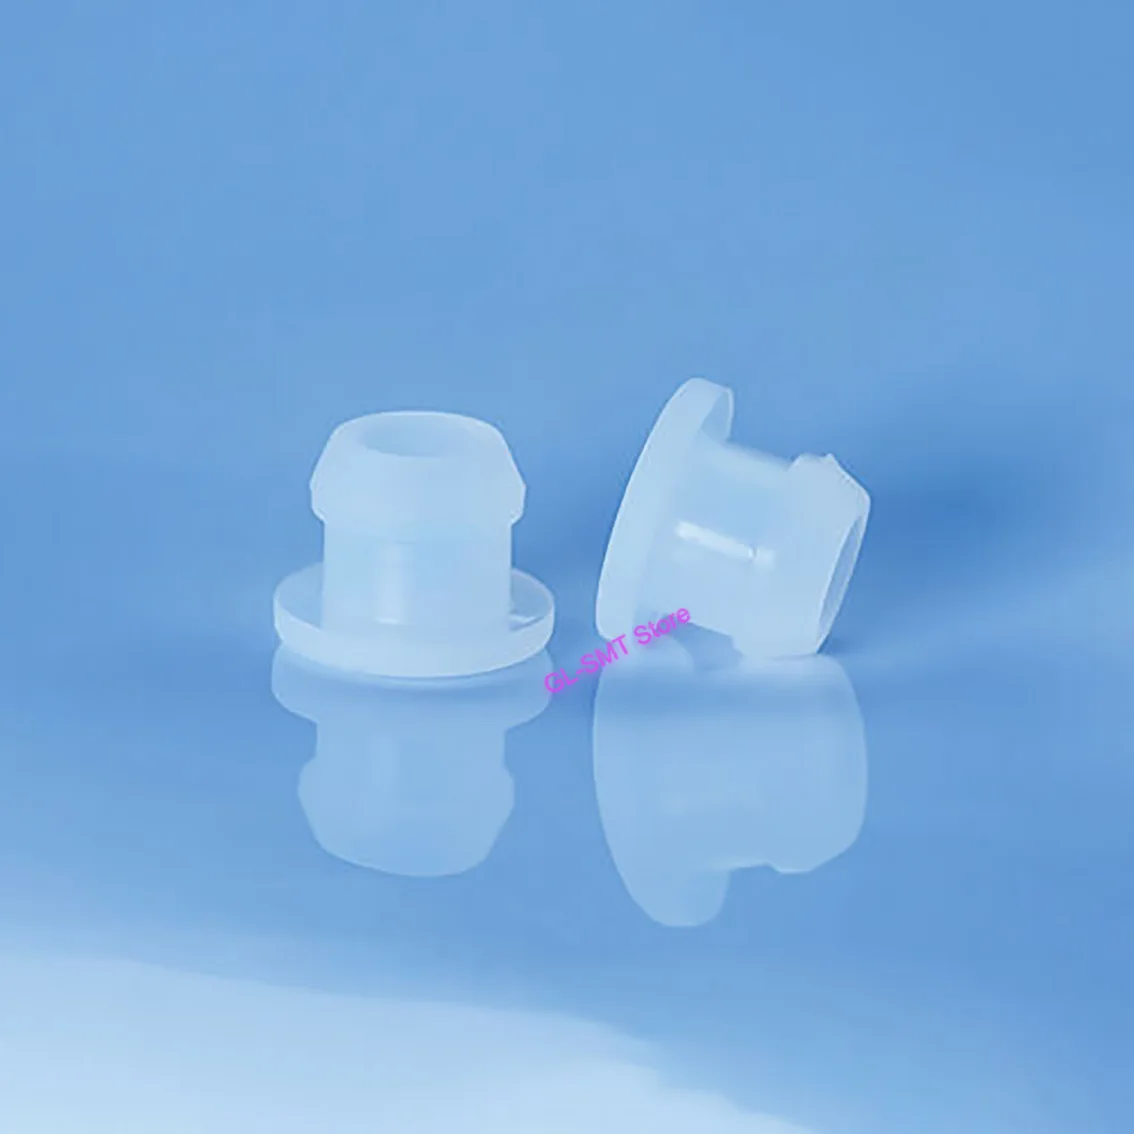 

Прозрачные силиконовые резиновые заглушки для отверстий от 4,5 мм до 14 мм, прозрачная заглушка типа T, защелкивающаяся заглушка для прокладки...